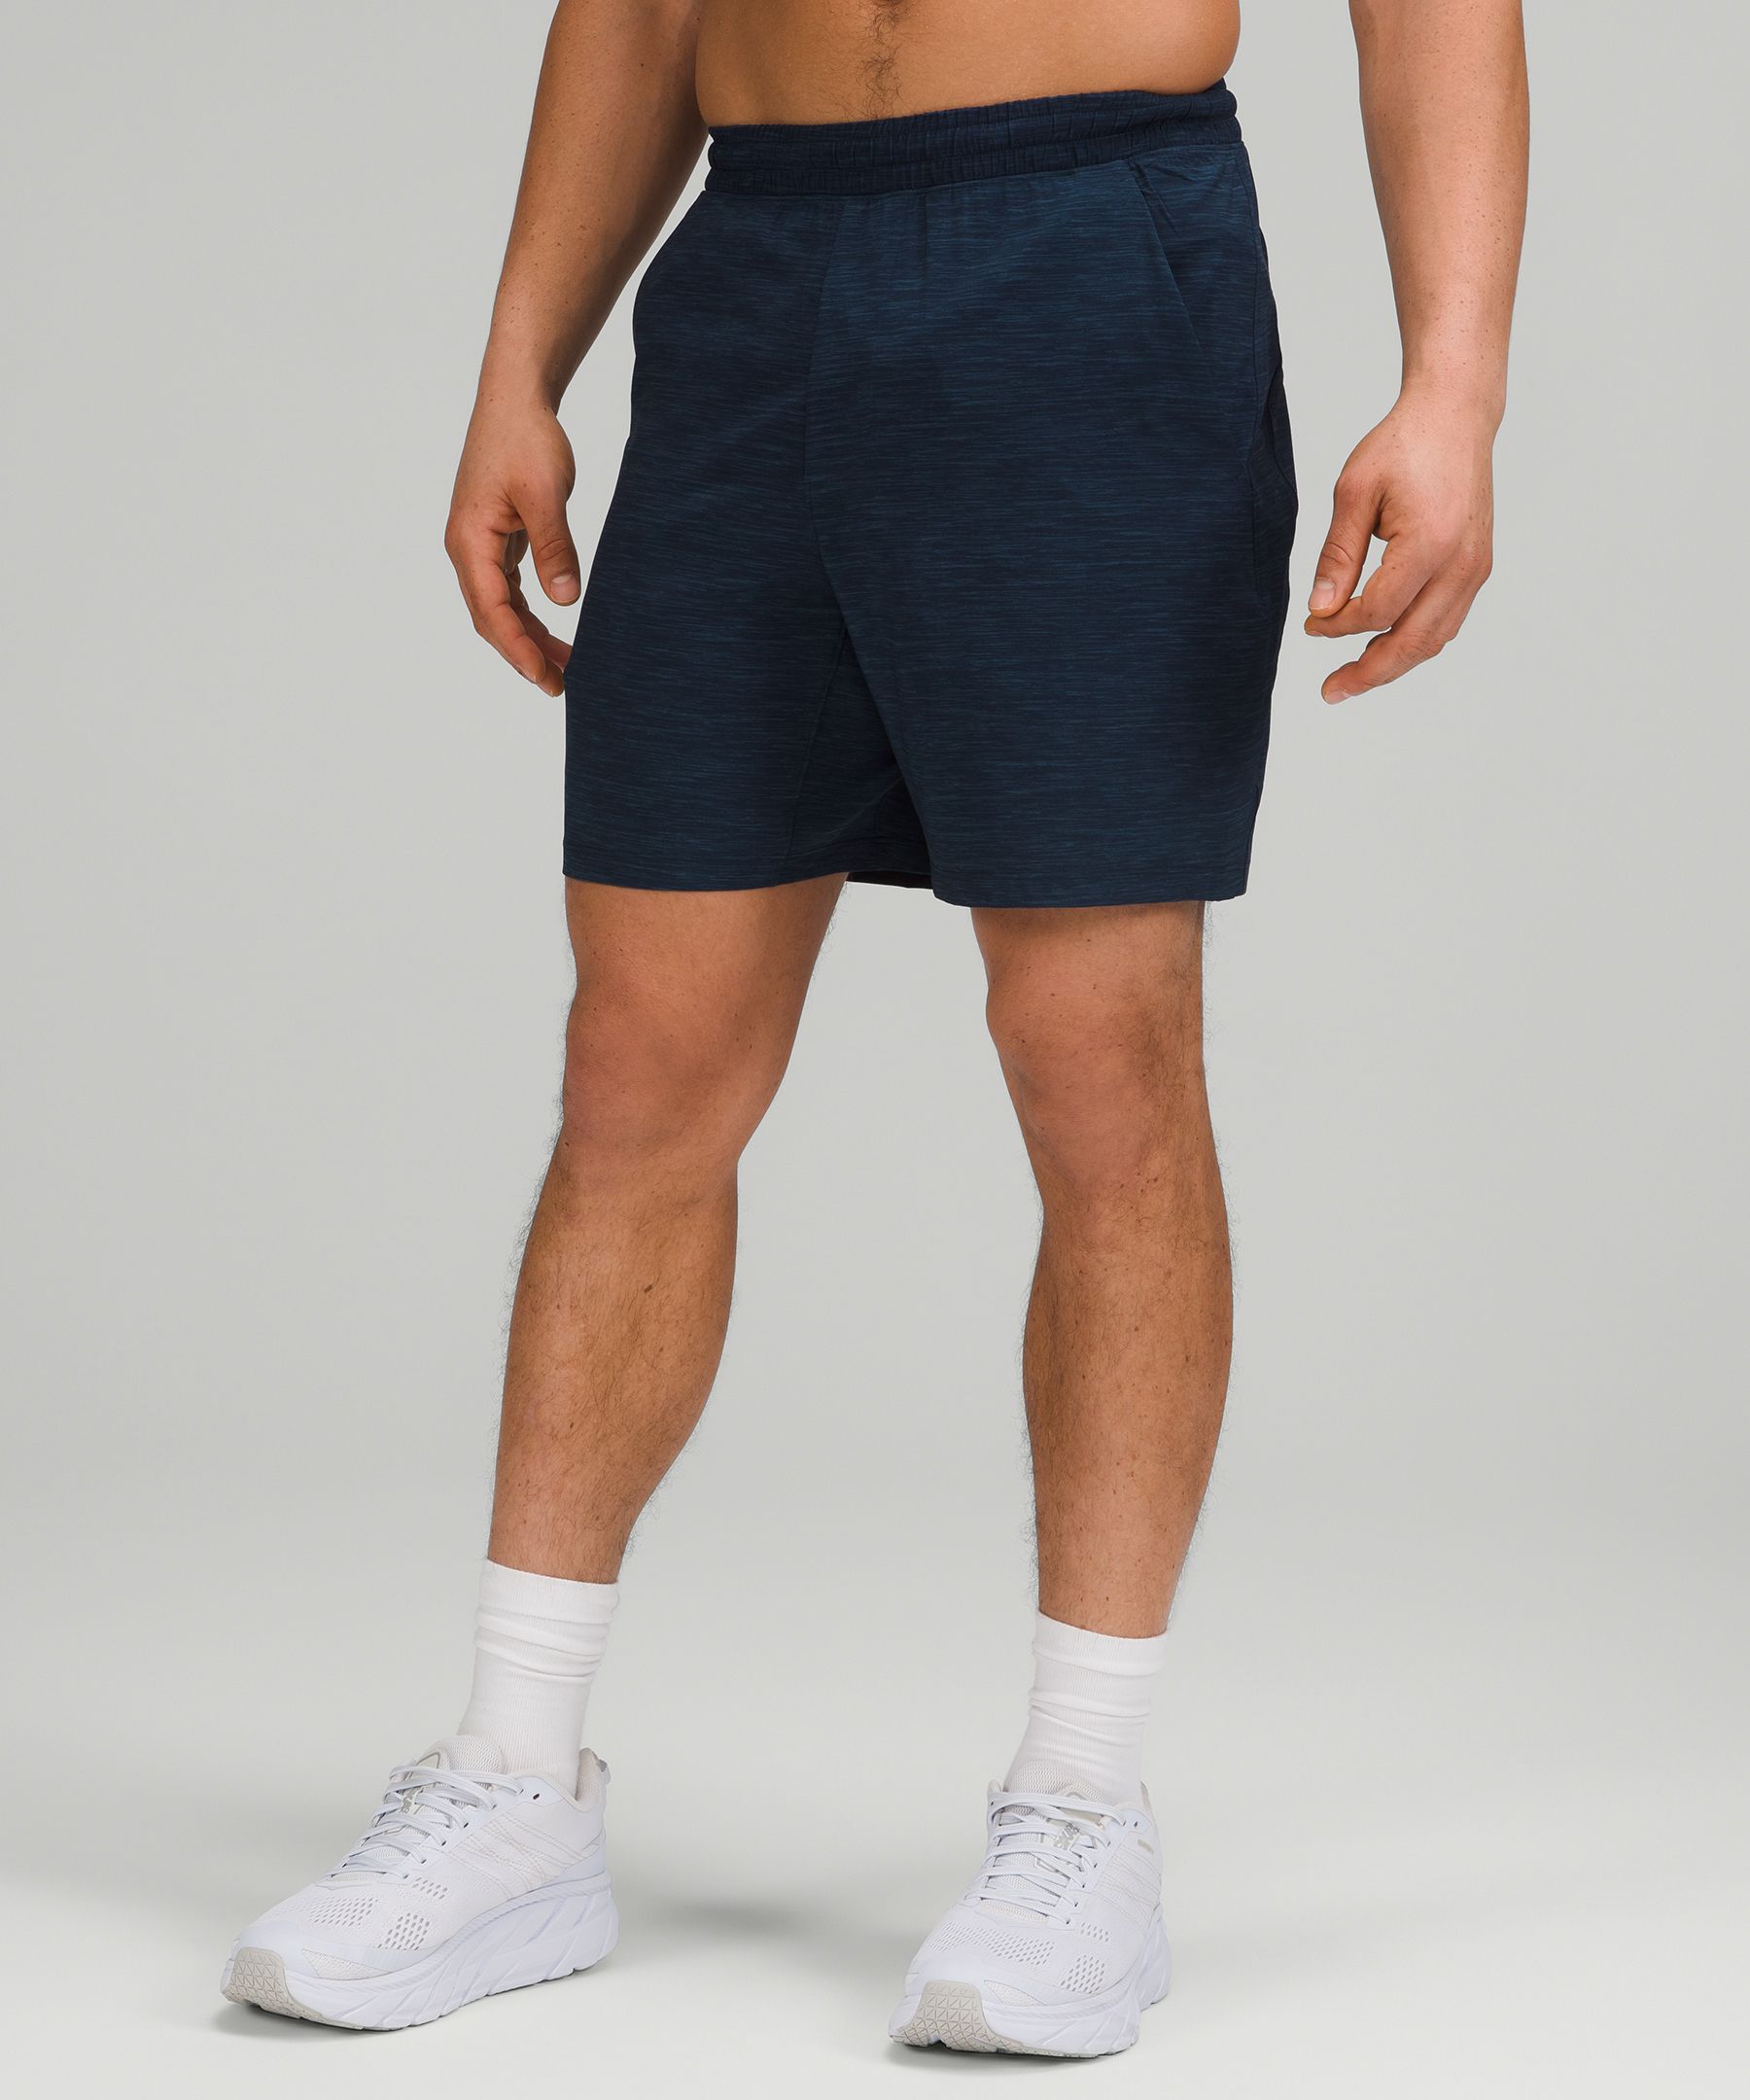 lululemon clearance shorts